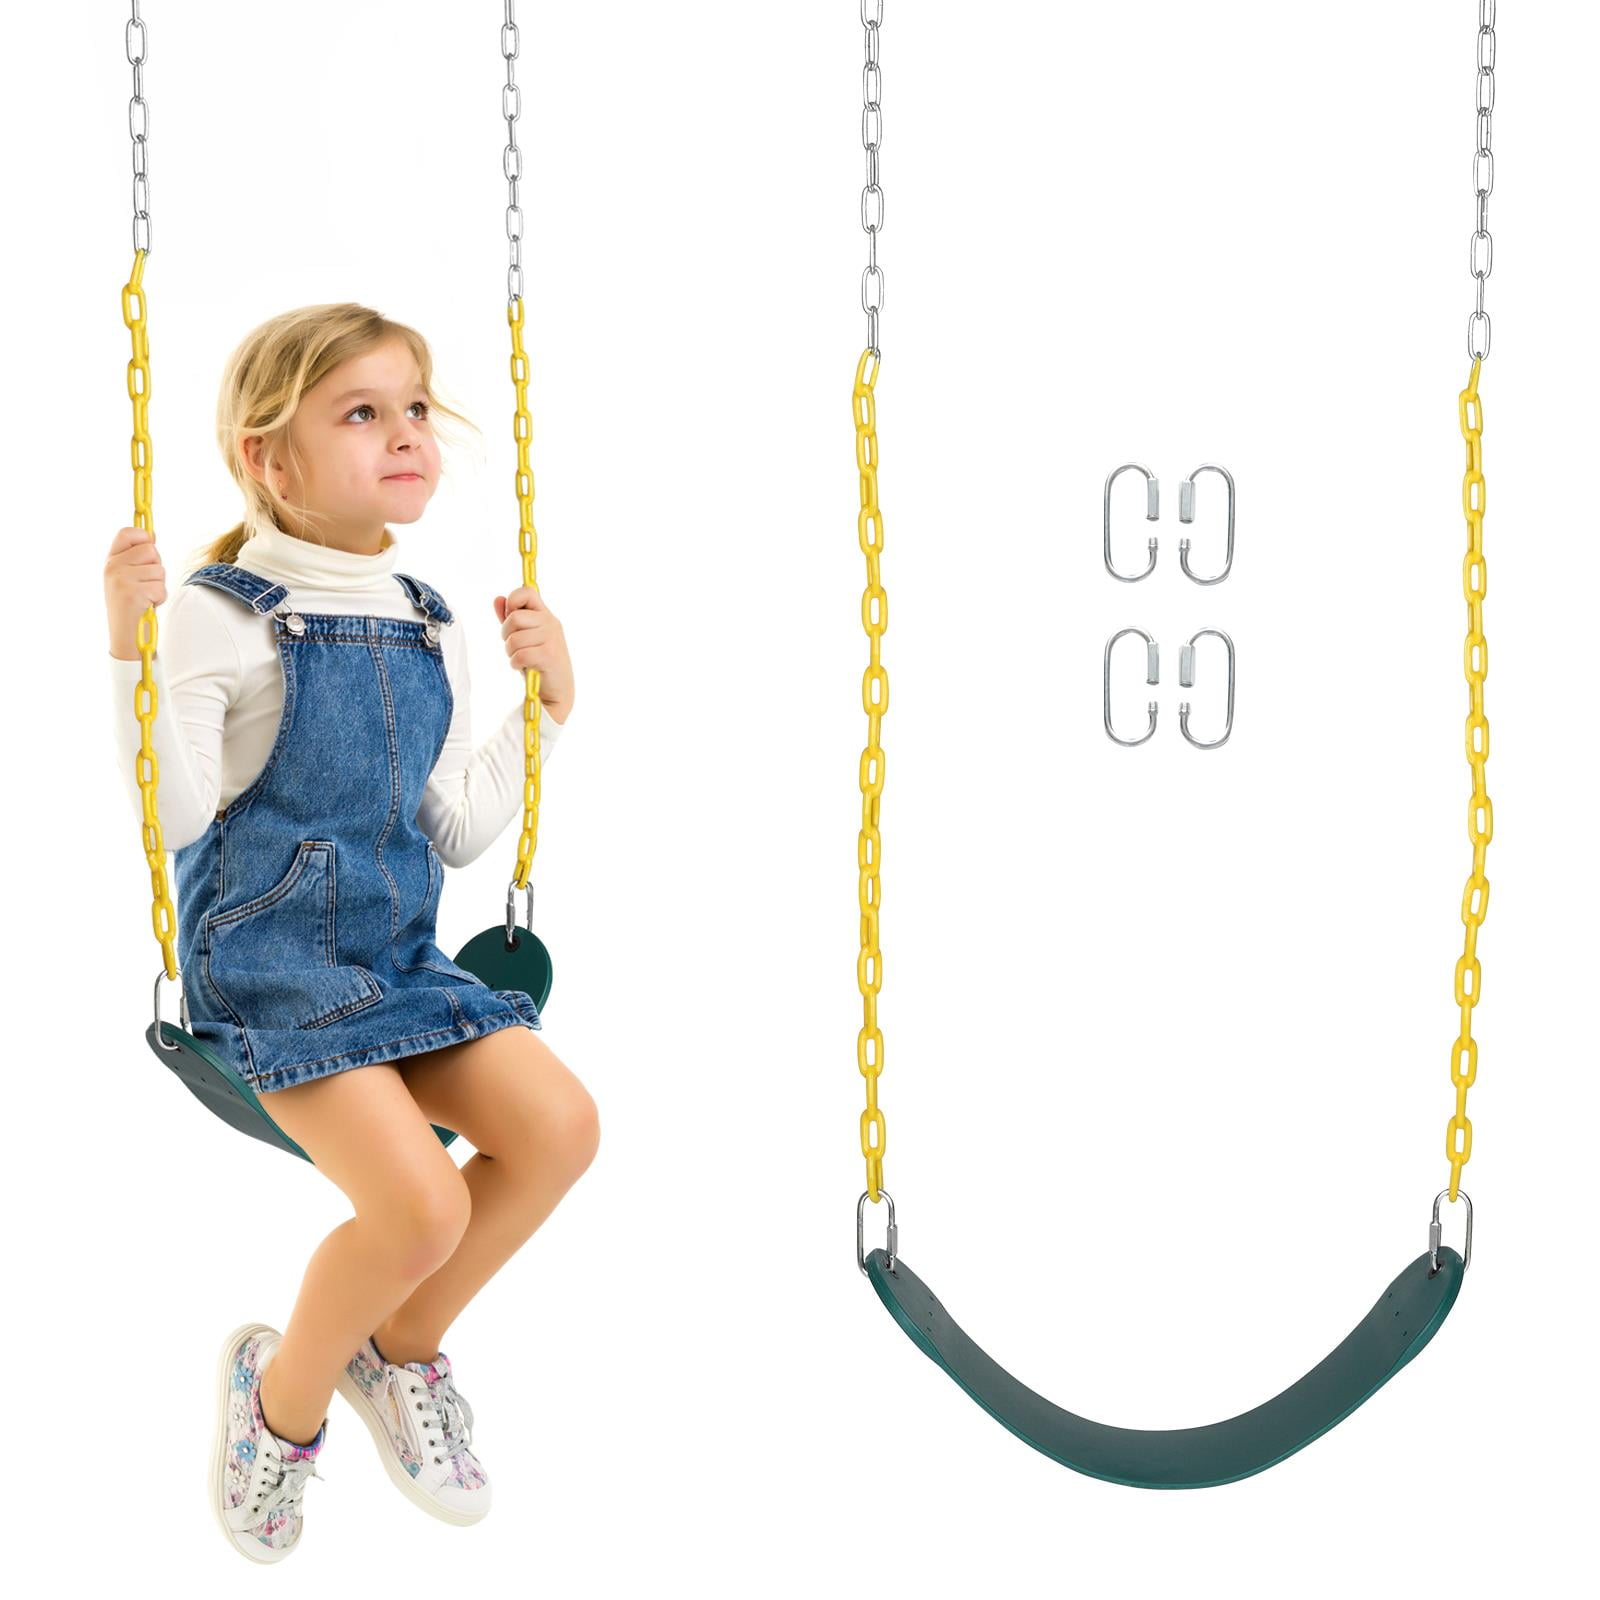 Swing Seat Heavy Duty Garden Playground Slides Accessories Set w/ 60" Long Chain 